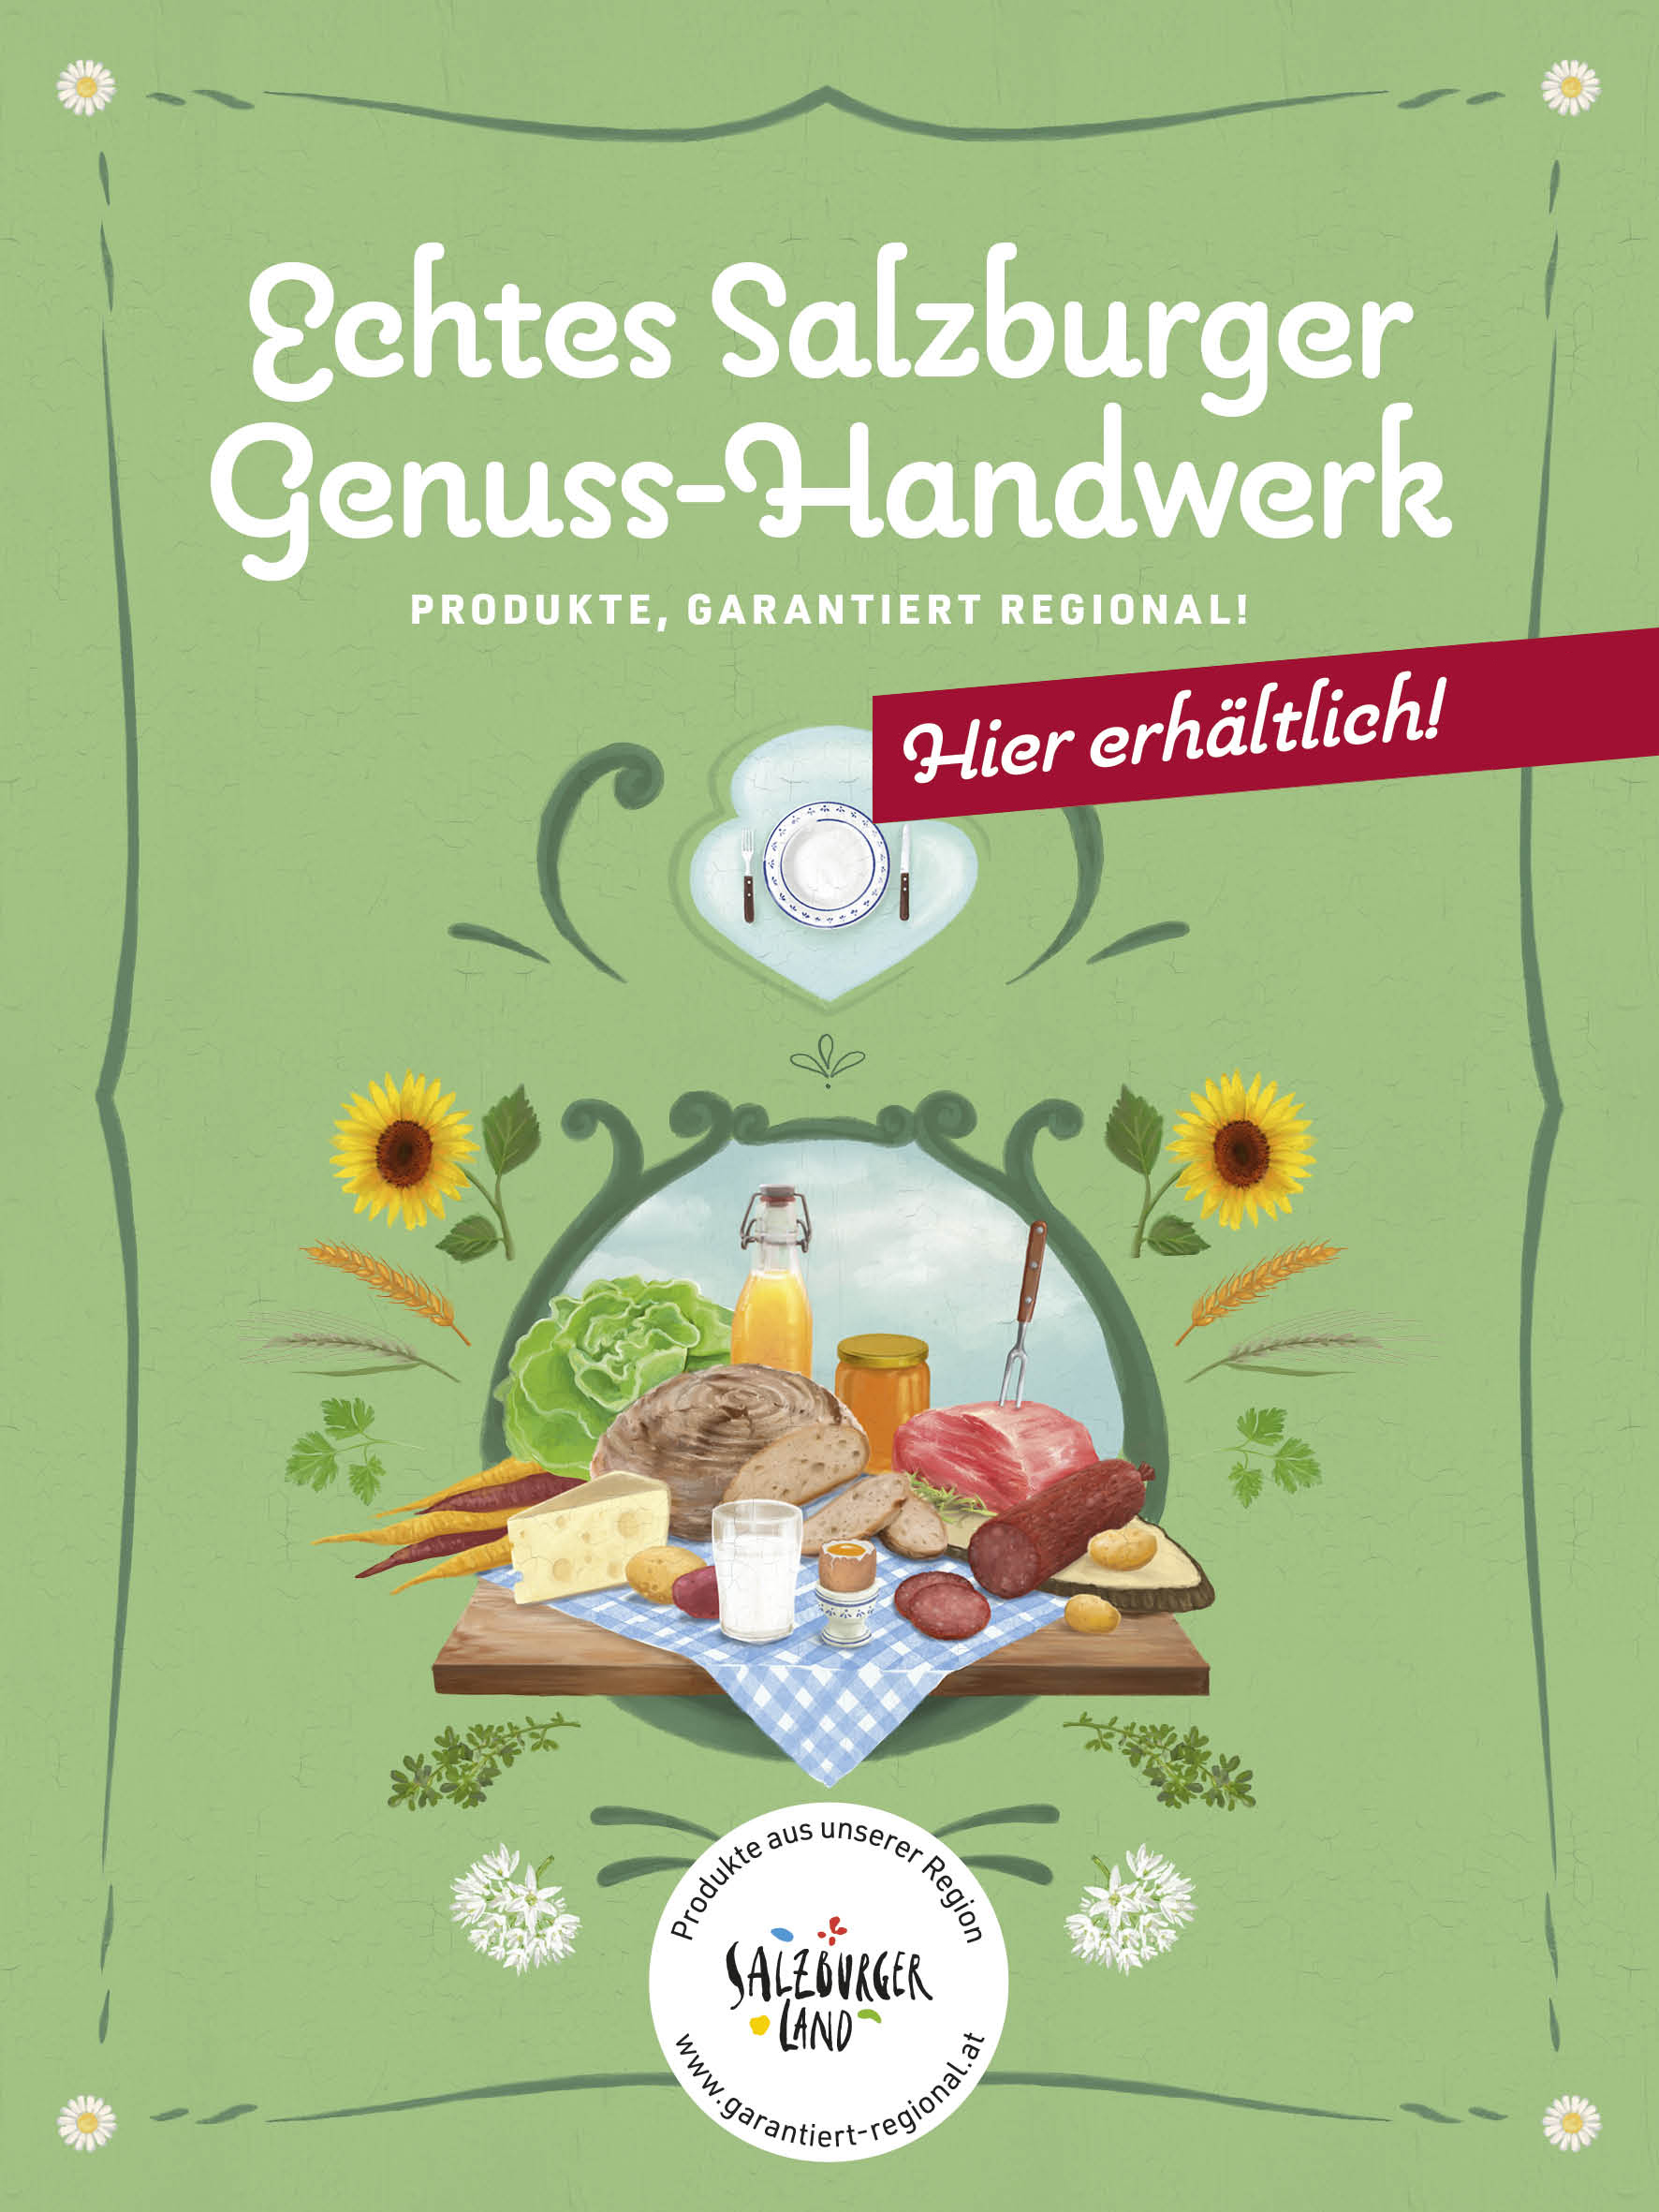 Lagerhaus Saalfelden  bei Salzburg schmeckt